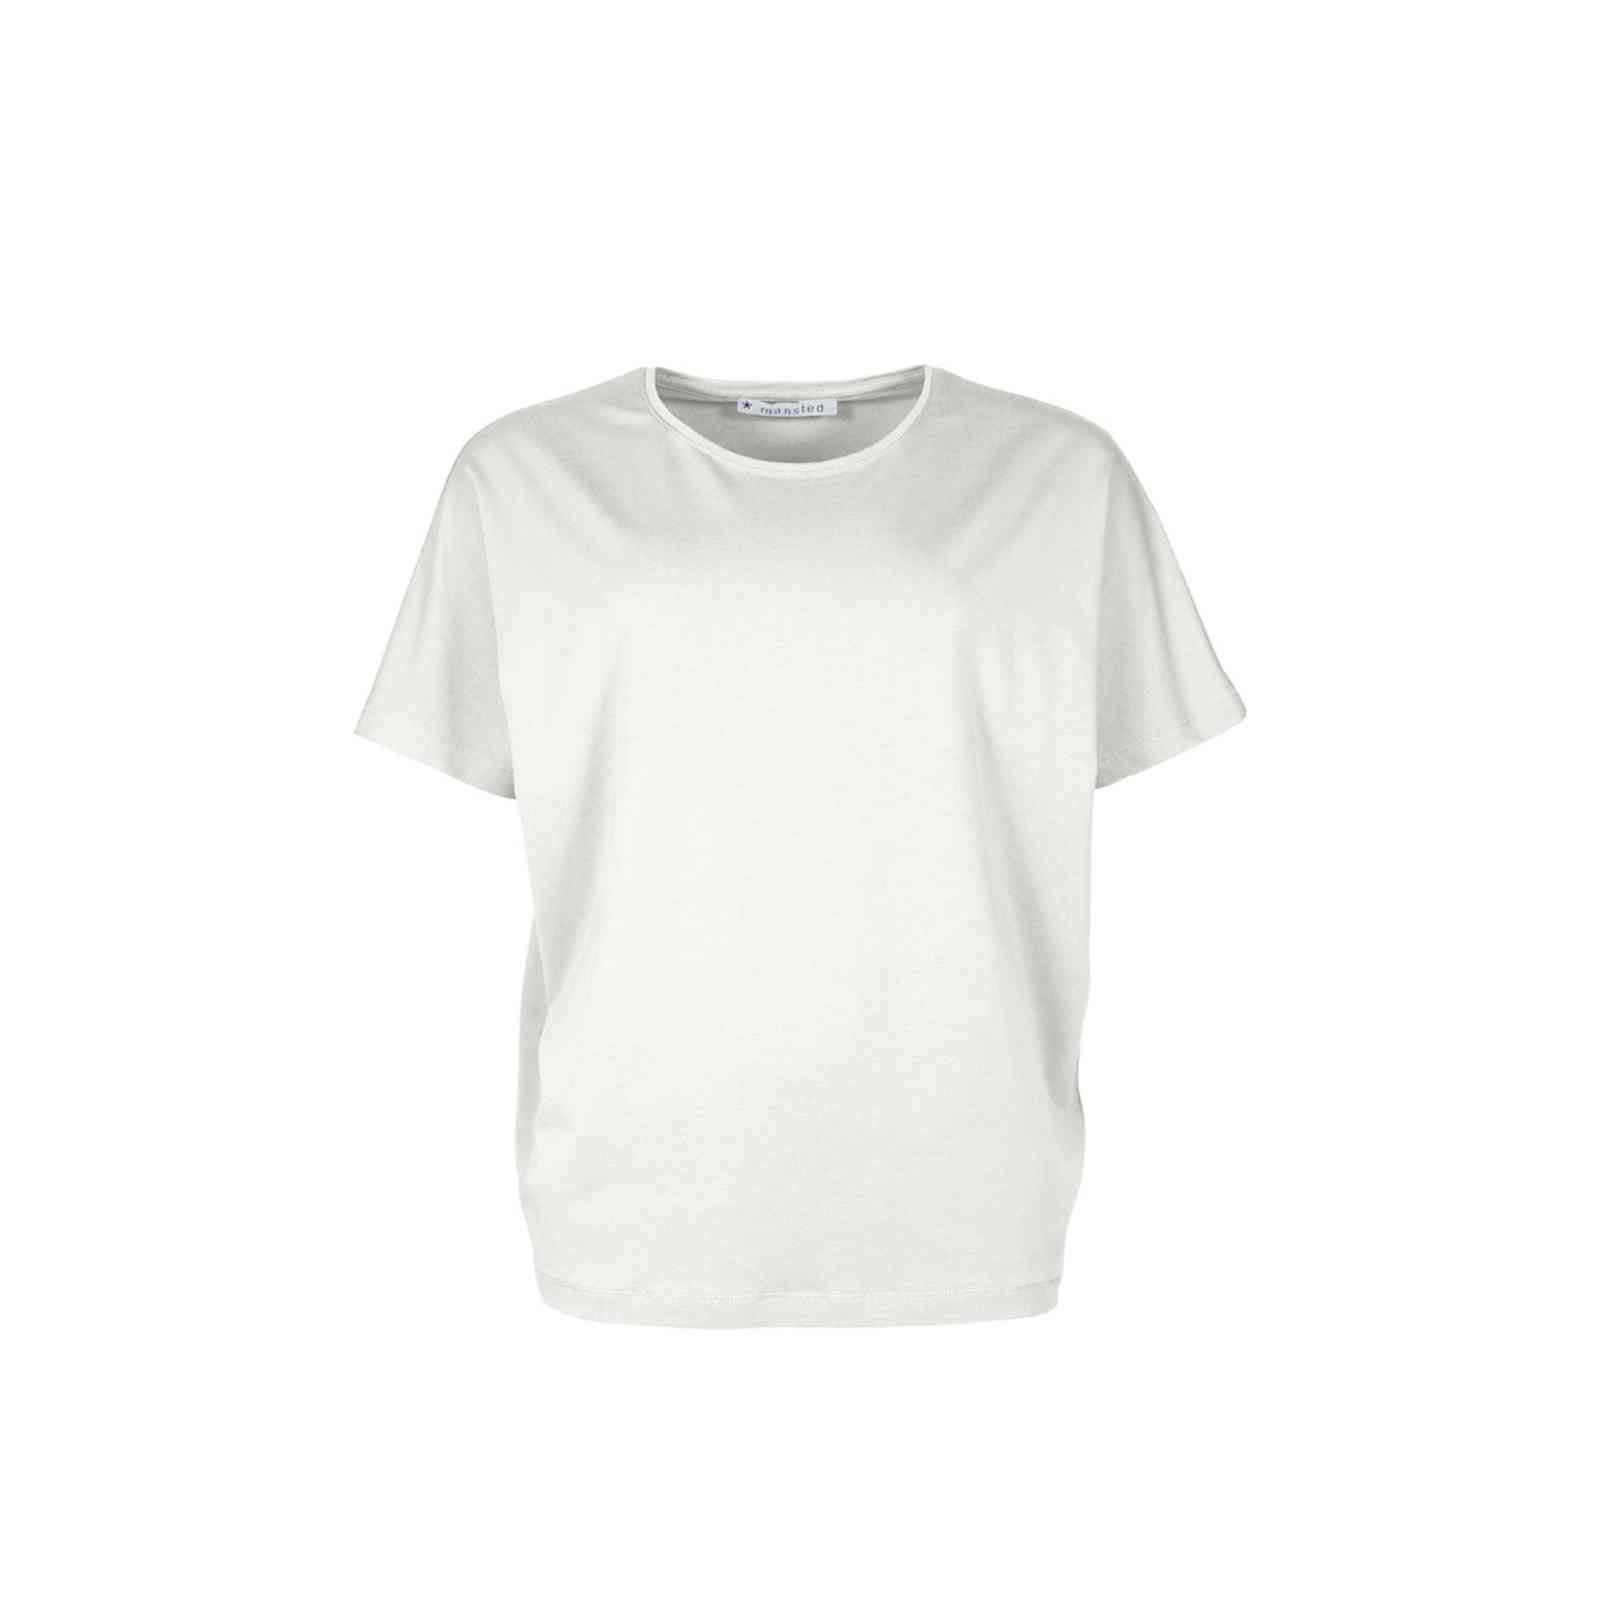 Off white ensfarvet t-shirt fra Mansted model Uma